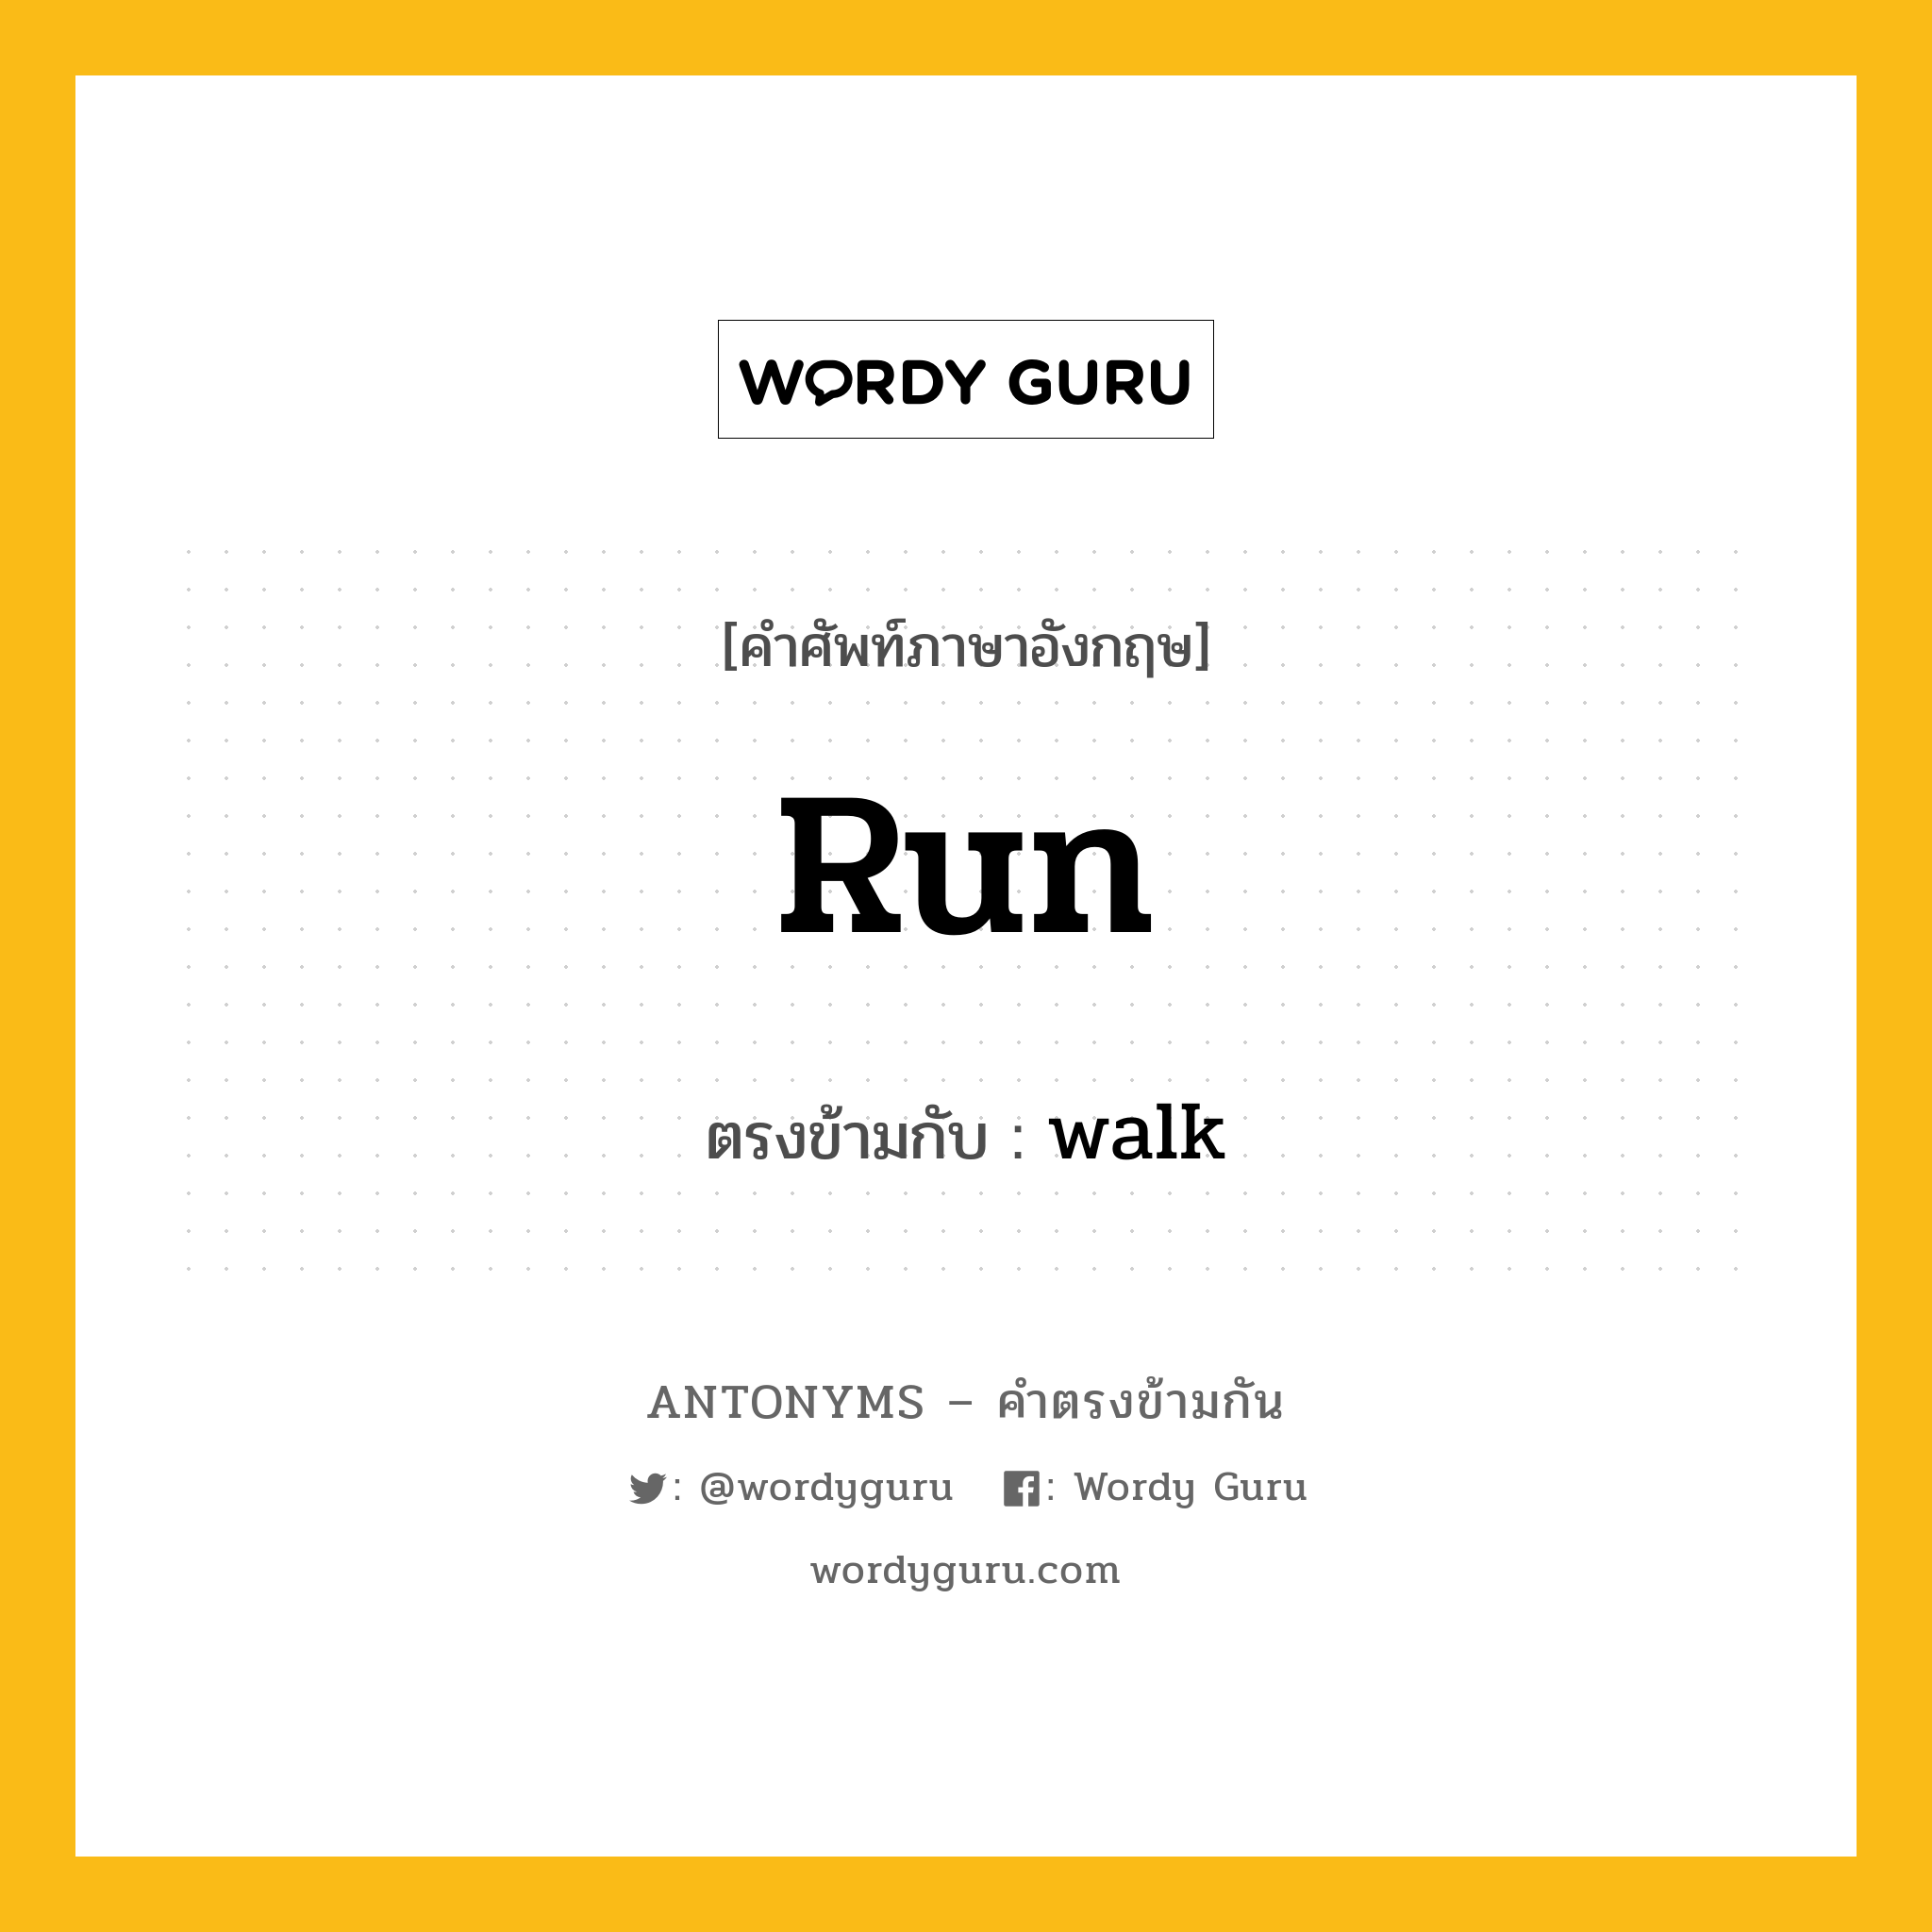 run เป็นคำตรงข้ามกับคำไหนบ้าง?, คำศัพท์ภาษาอังกฤษ run ตรงข้ามกับ walk หมวด walk